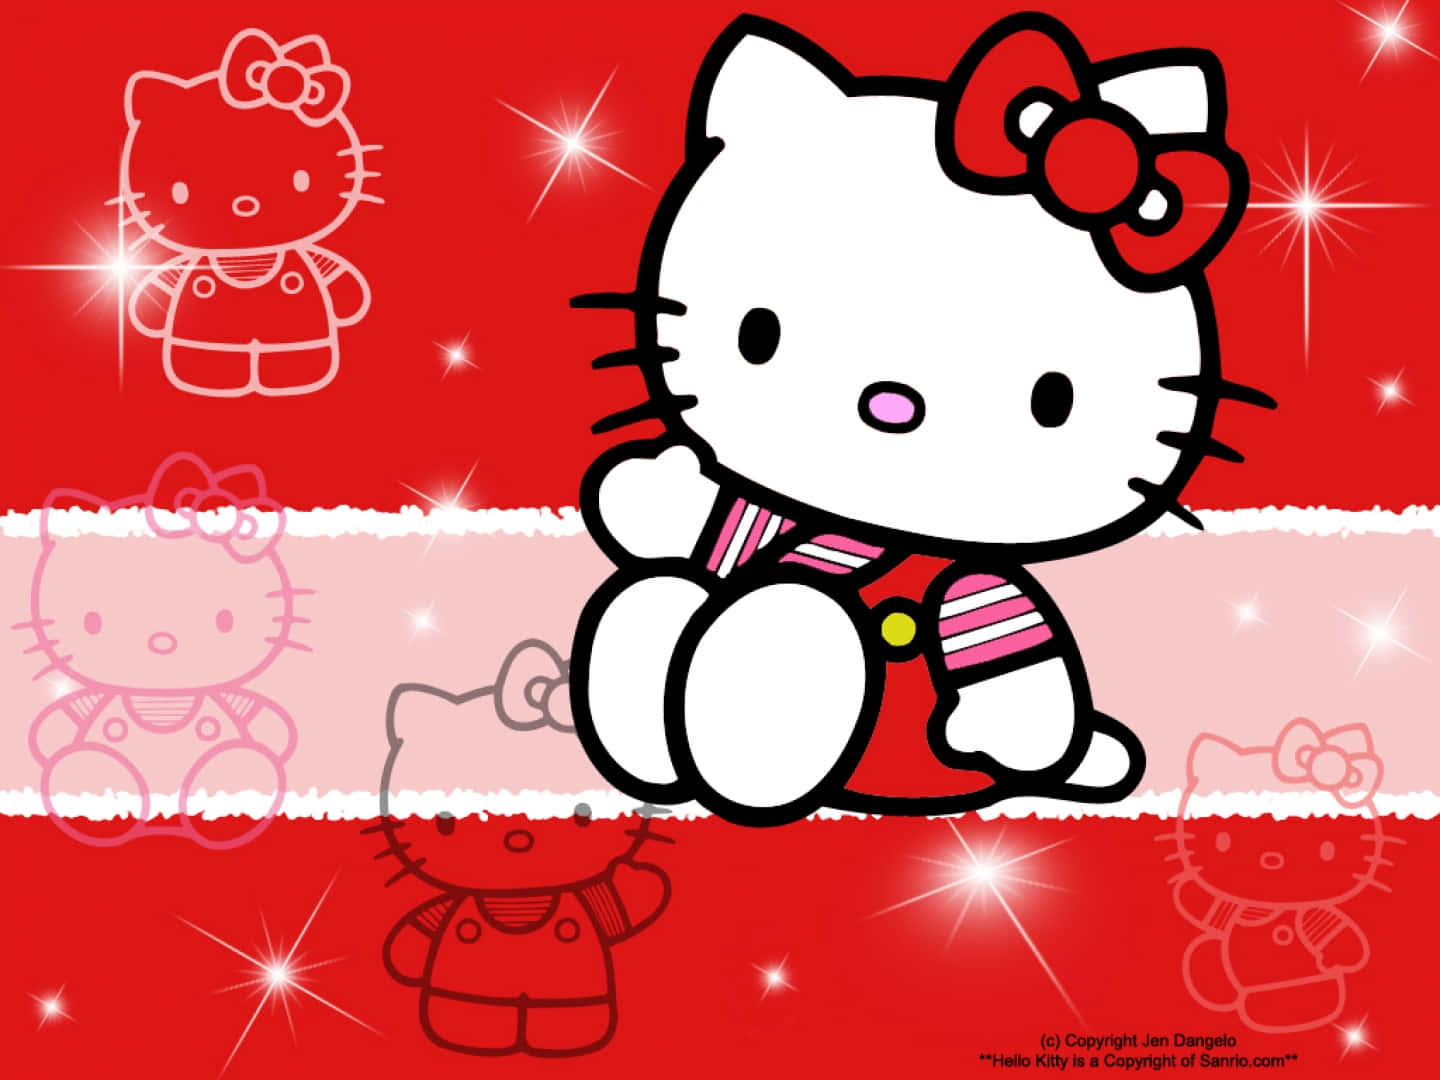 Låsupp Rolig Och Utforskande Upplevelse Med En Hello Kitty-pc. Wallpaper